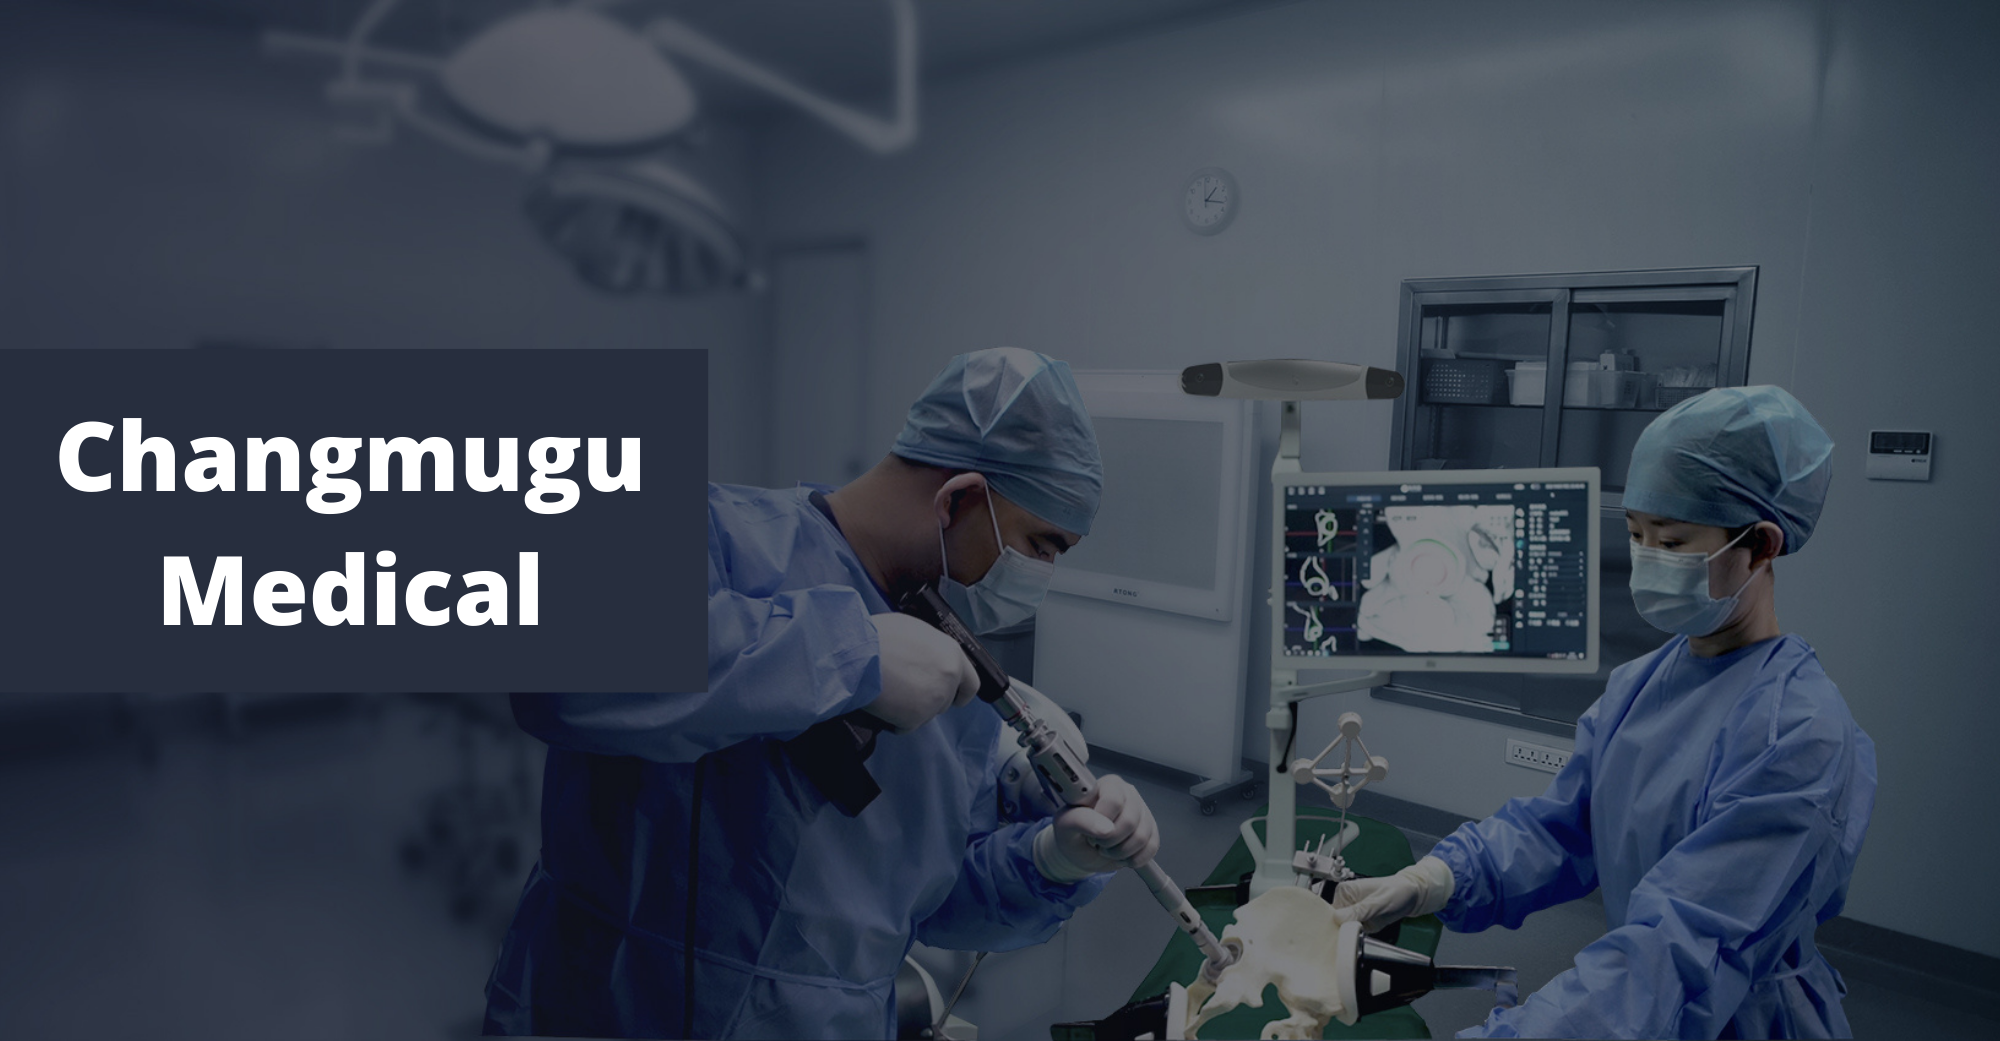 Ang Changmugu Medical ay tumanggap ng $84.3 milyon sa financing ng Round B, na kasabay na pinamunuan ng CICC Capital, IDG Capital, at CDH VGC